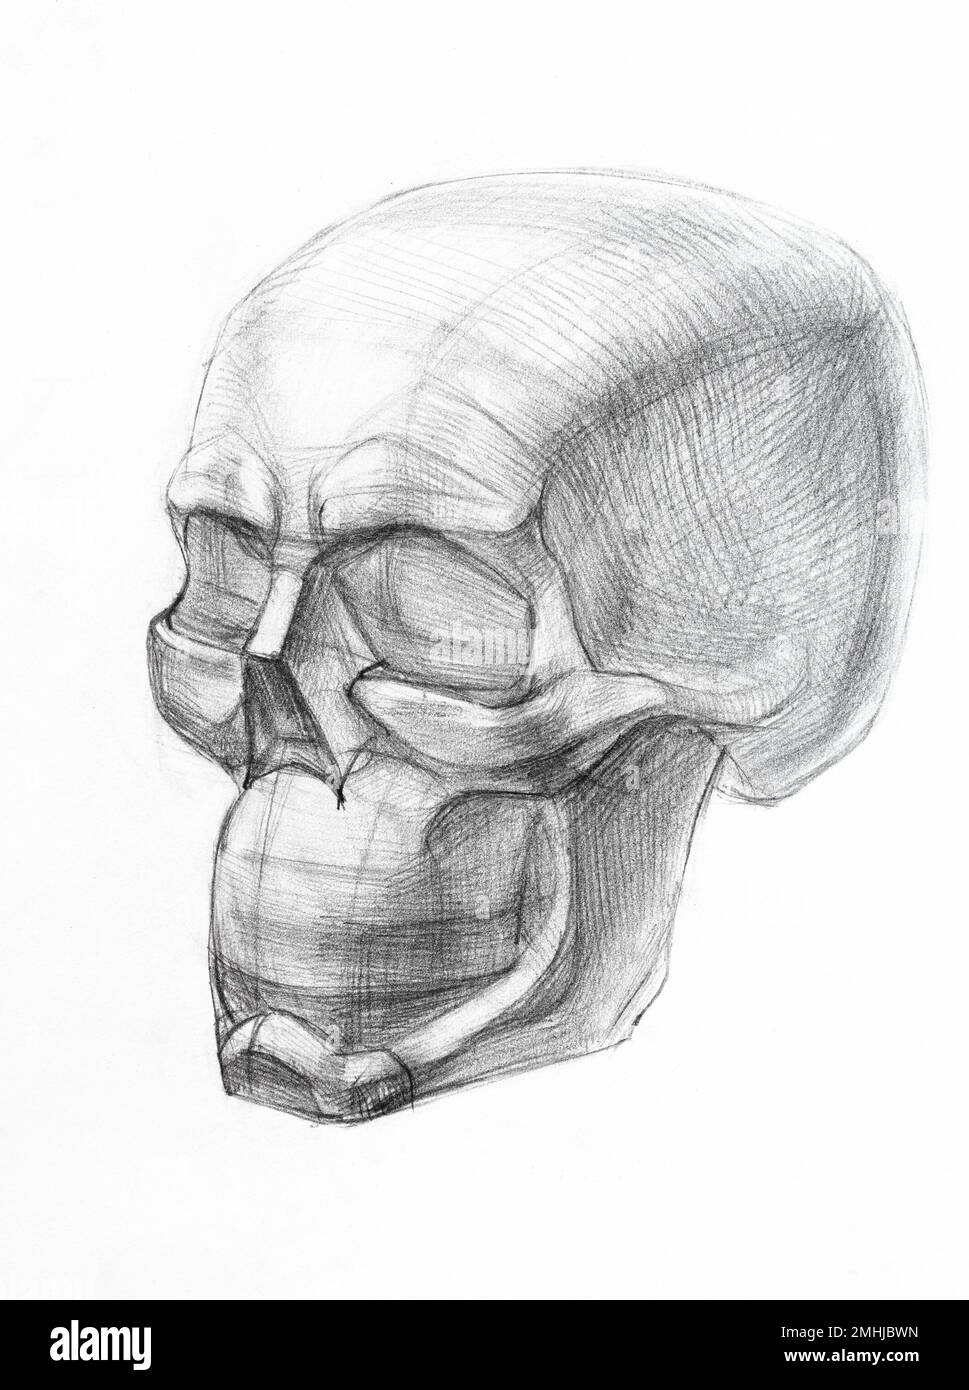 dibujo académico - forma de cráneo humano dibujado a mano por lápiz regular en papel blanco Foto de stock